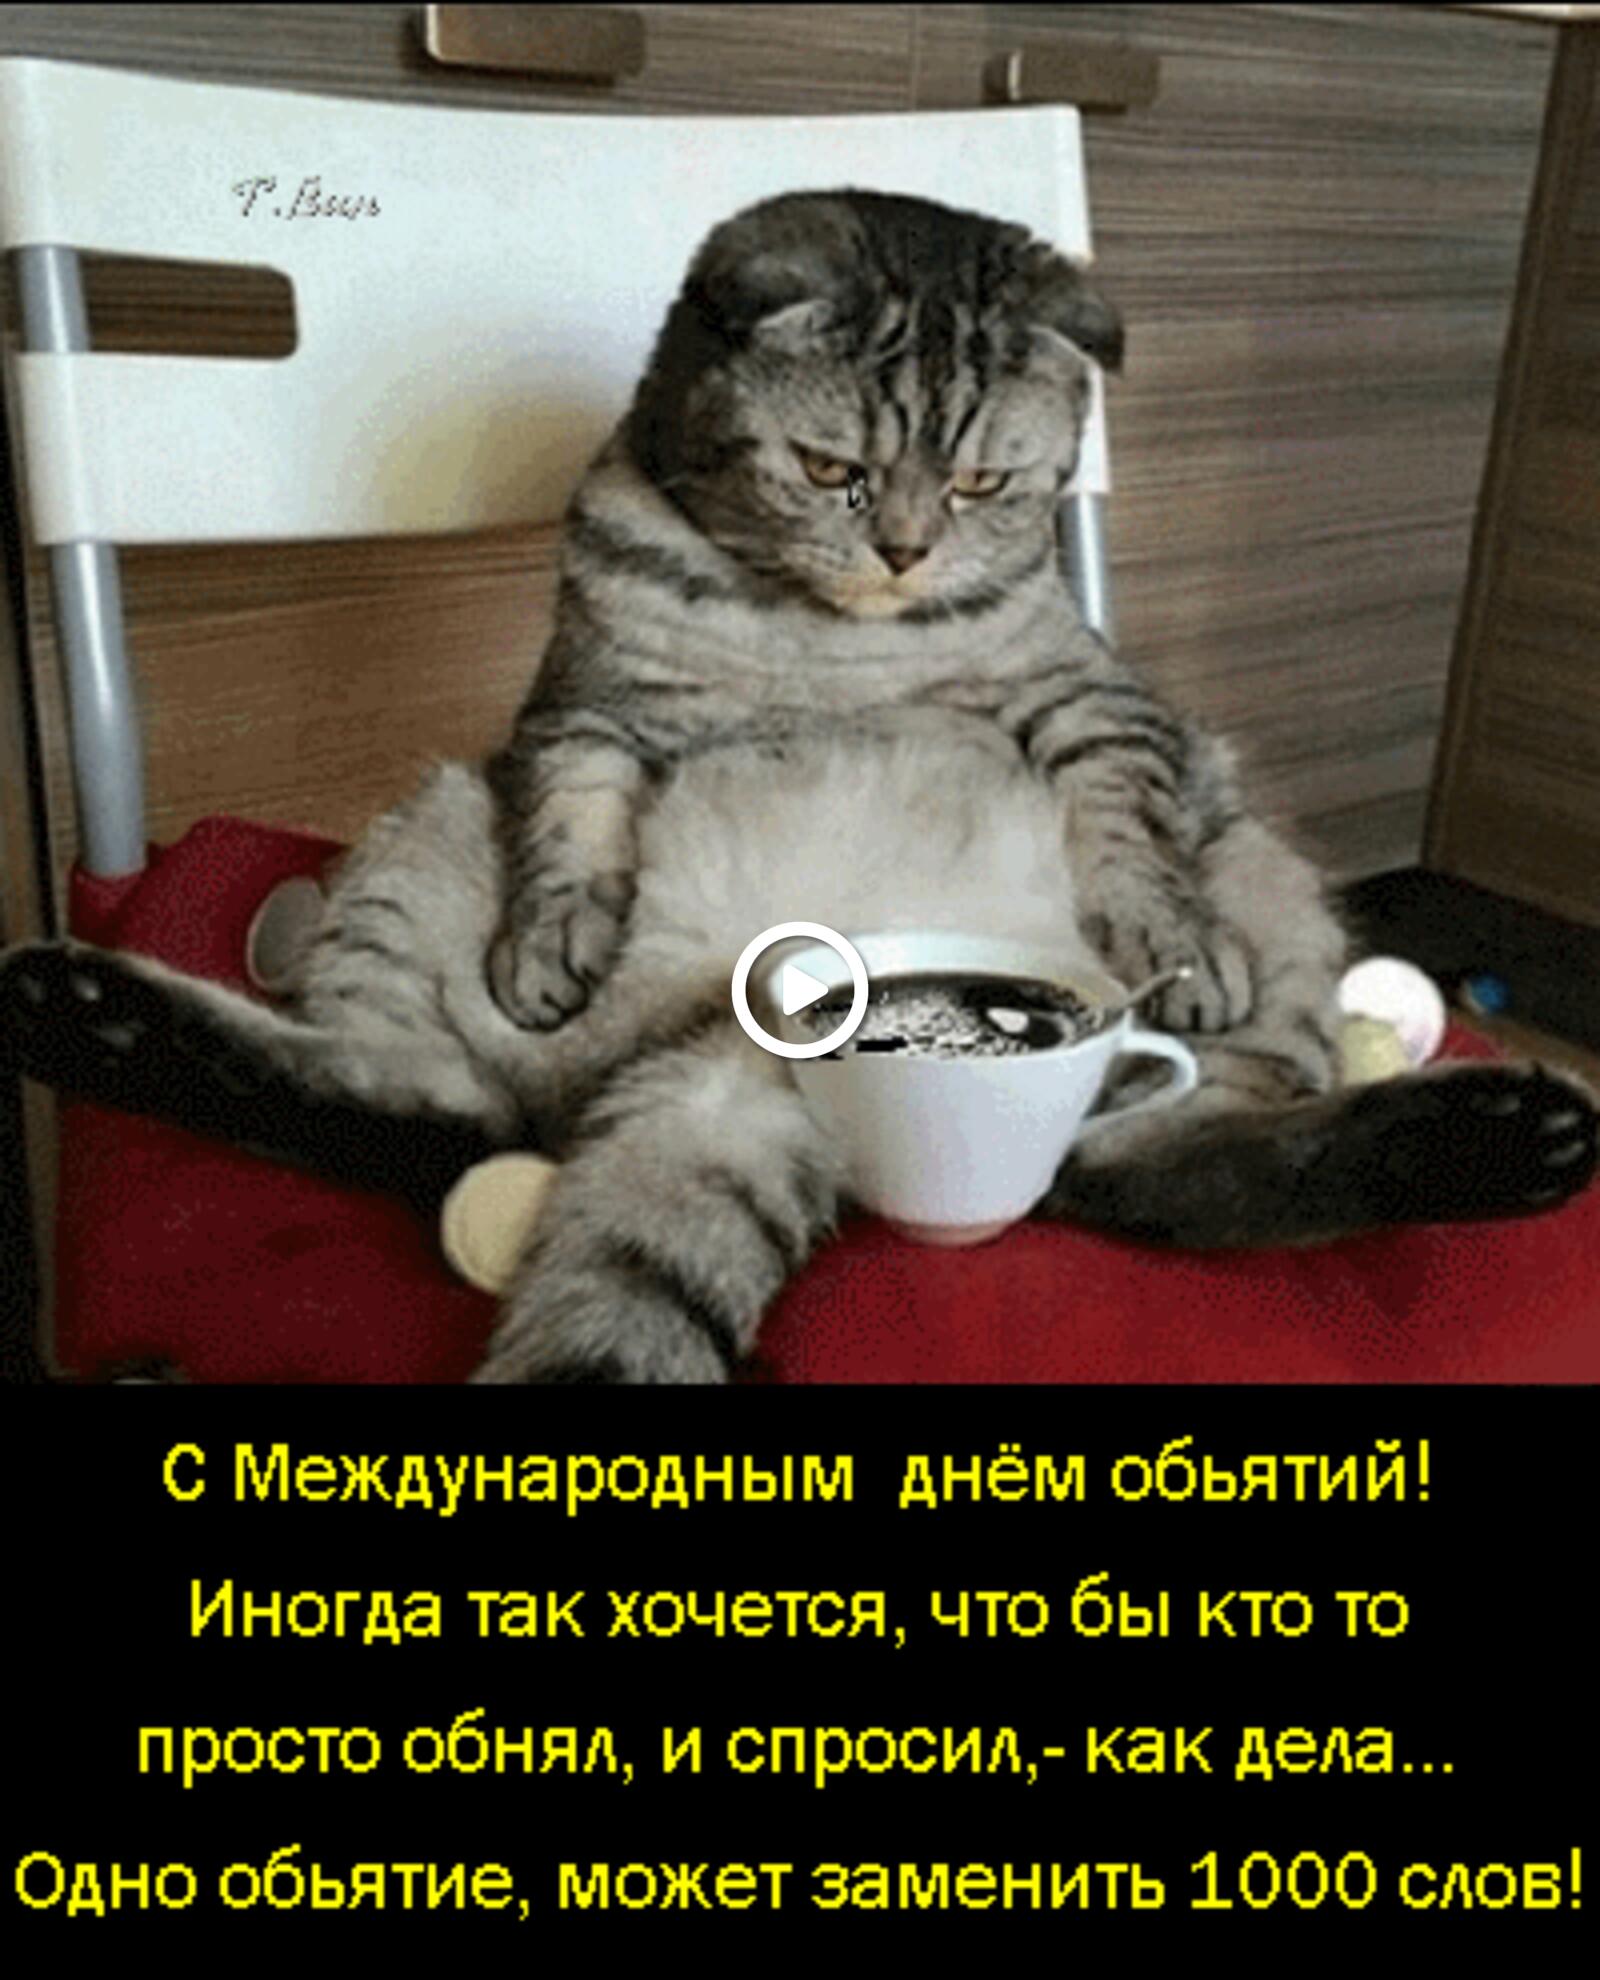 Открытка на тему день объятий кошки чай бесплатно